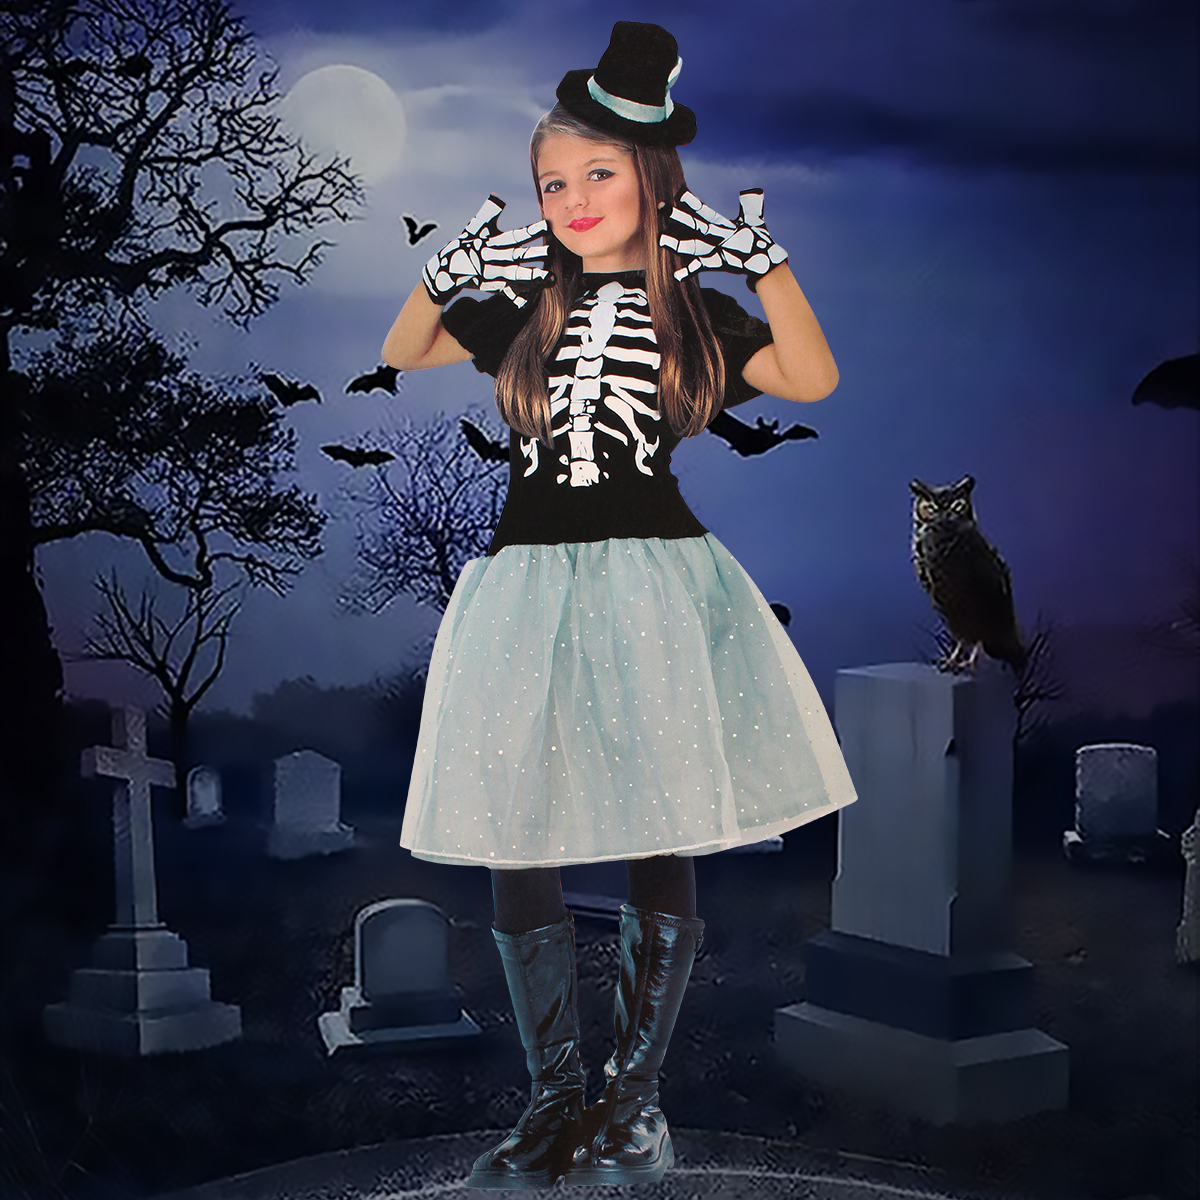 Halloween Scary Skeleton Zombie Costume